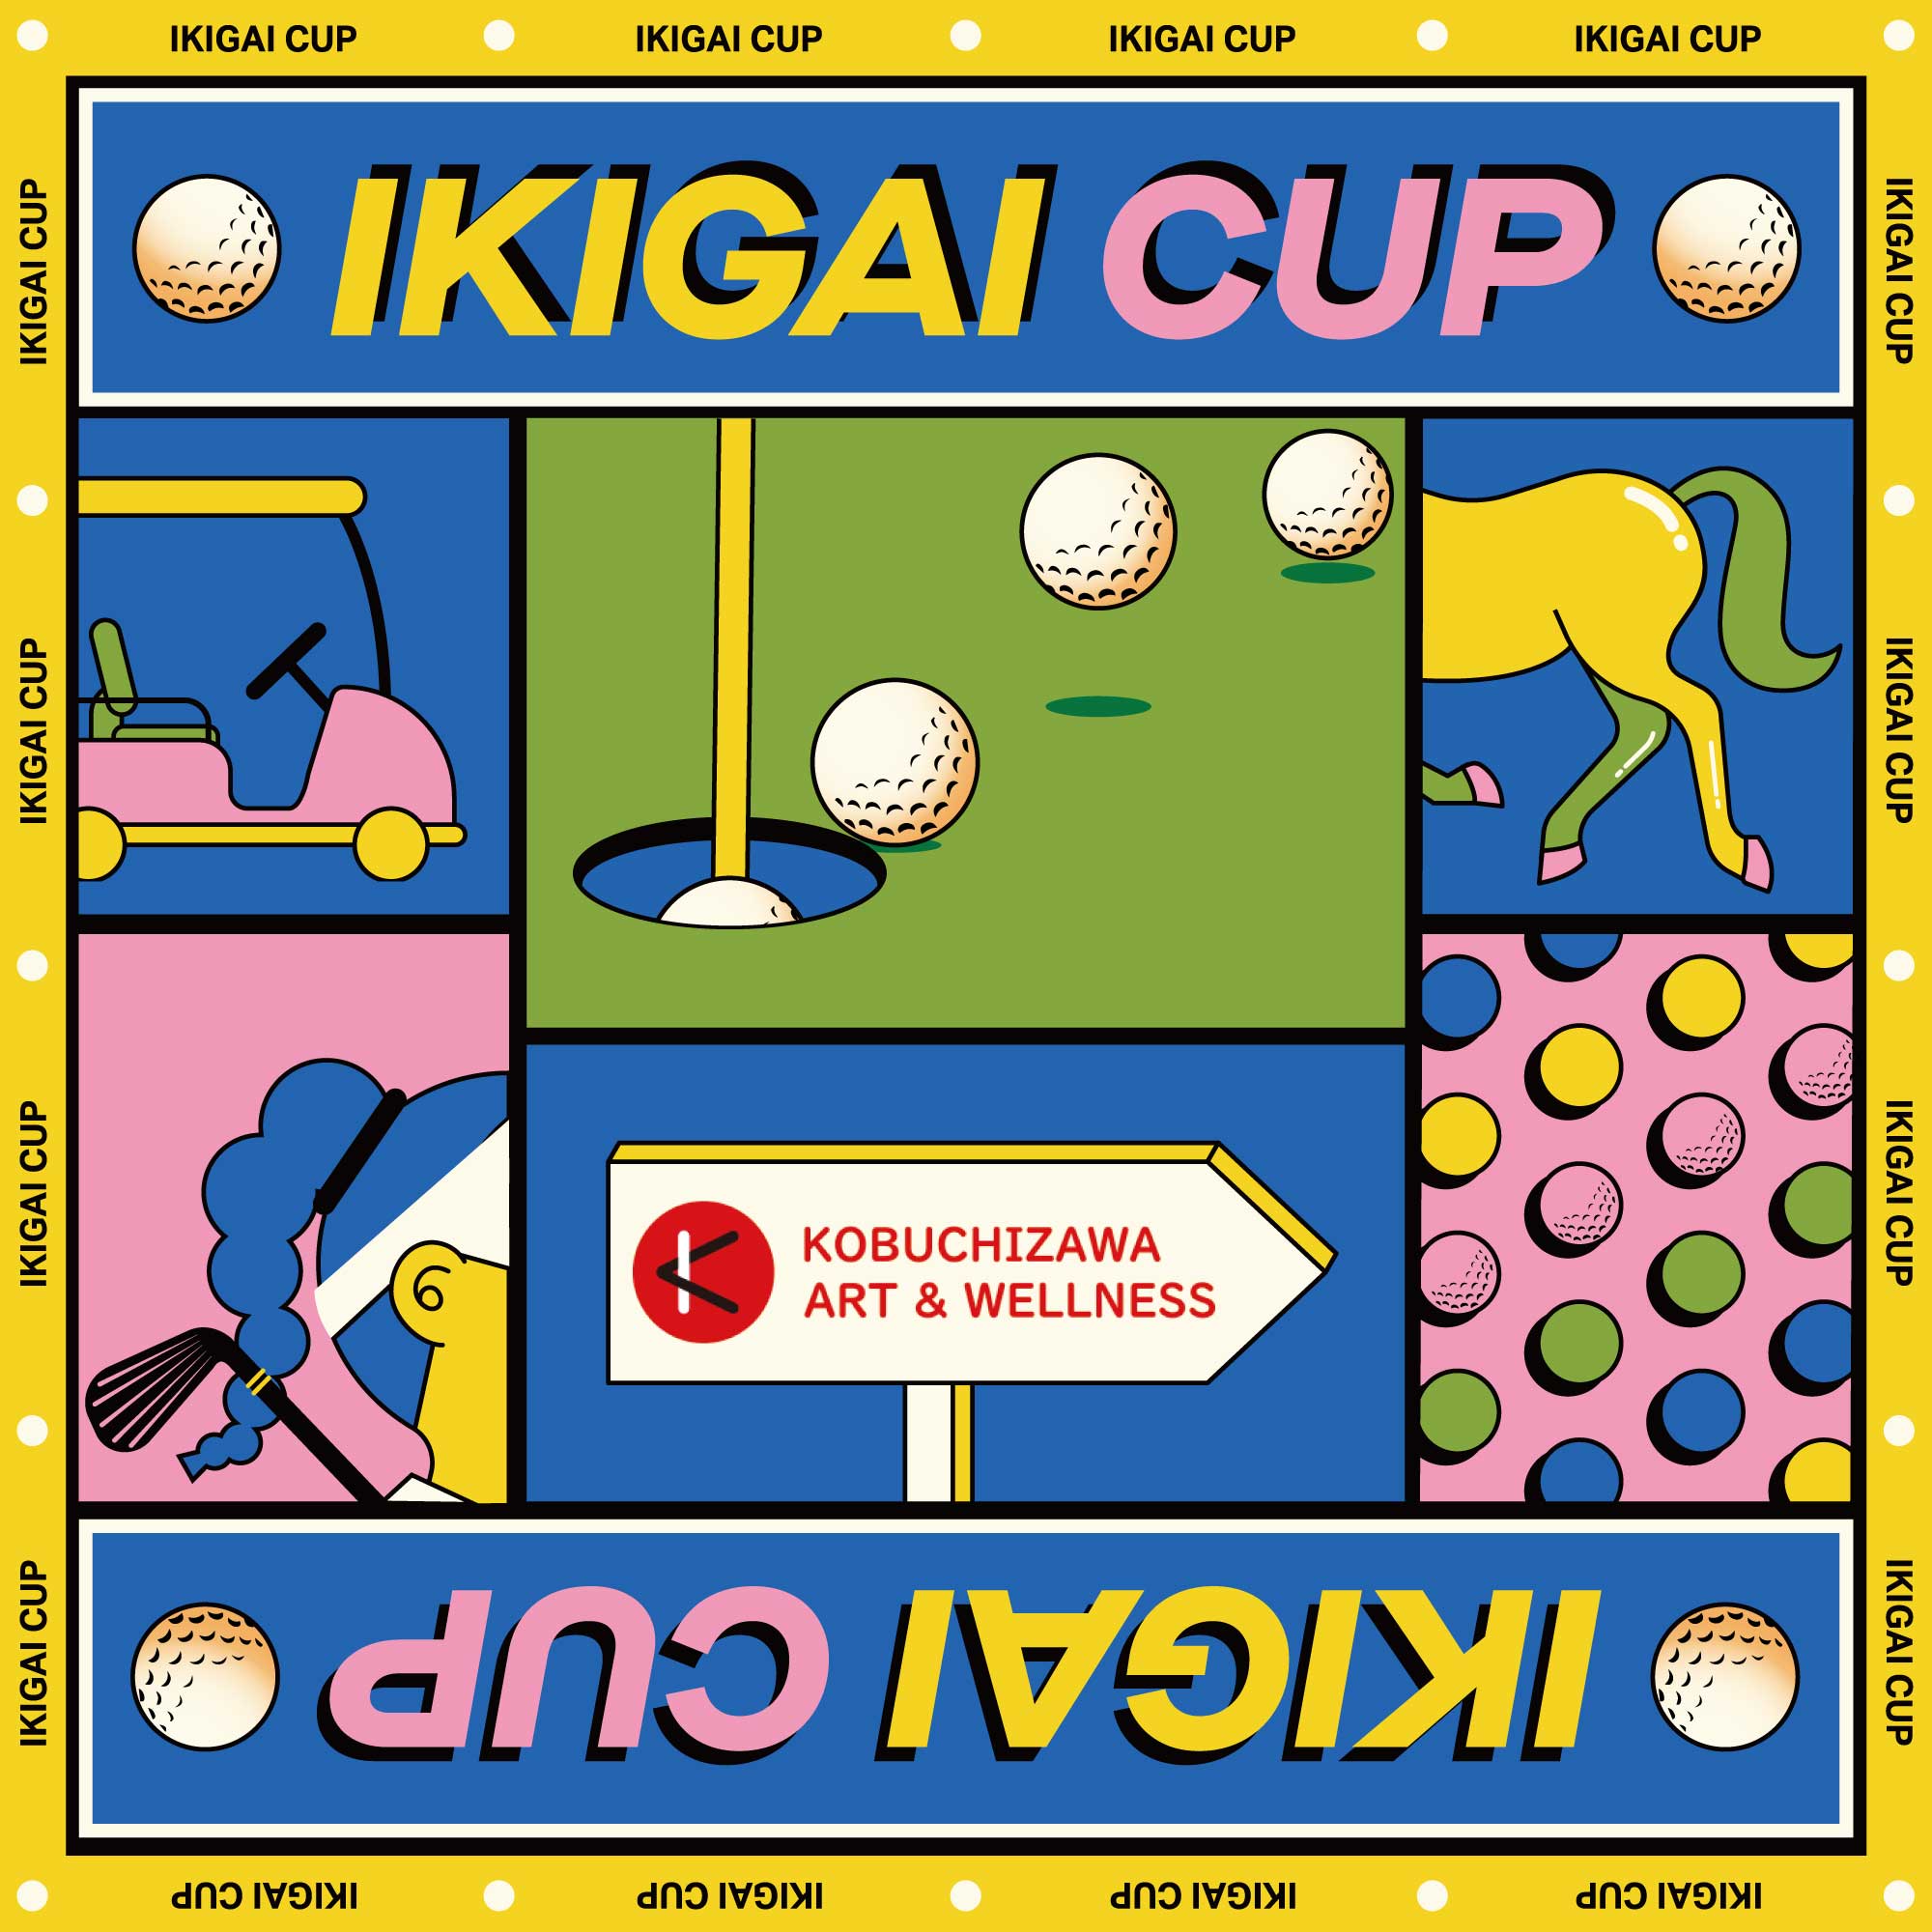 IKIGAI CUP 2023 ギャラリー観戦についてのお願い